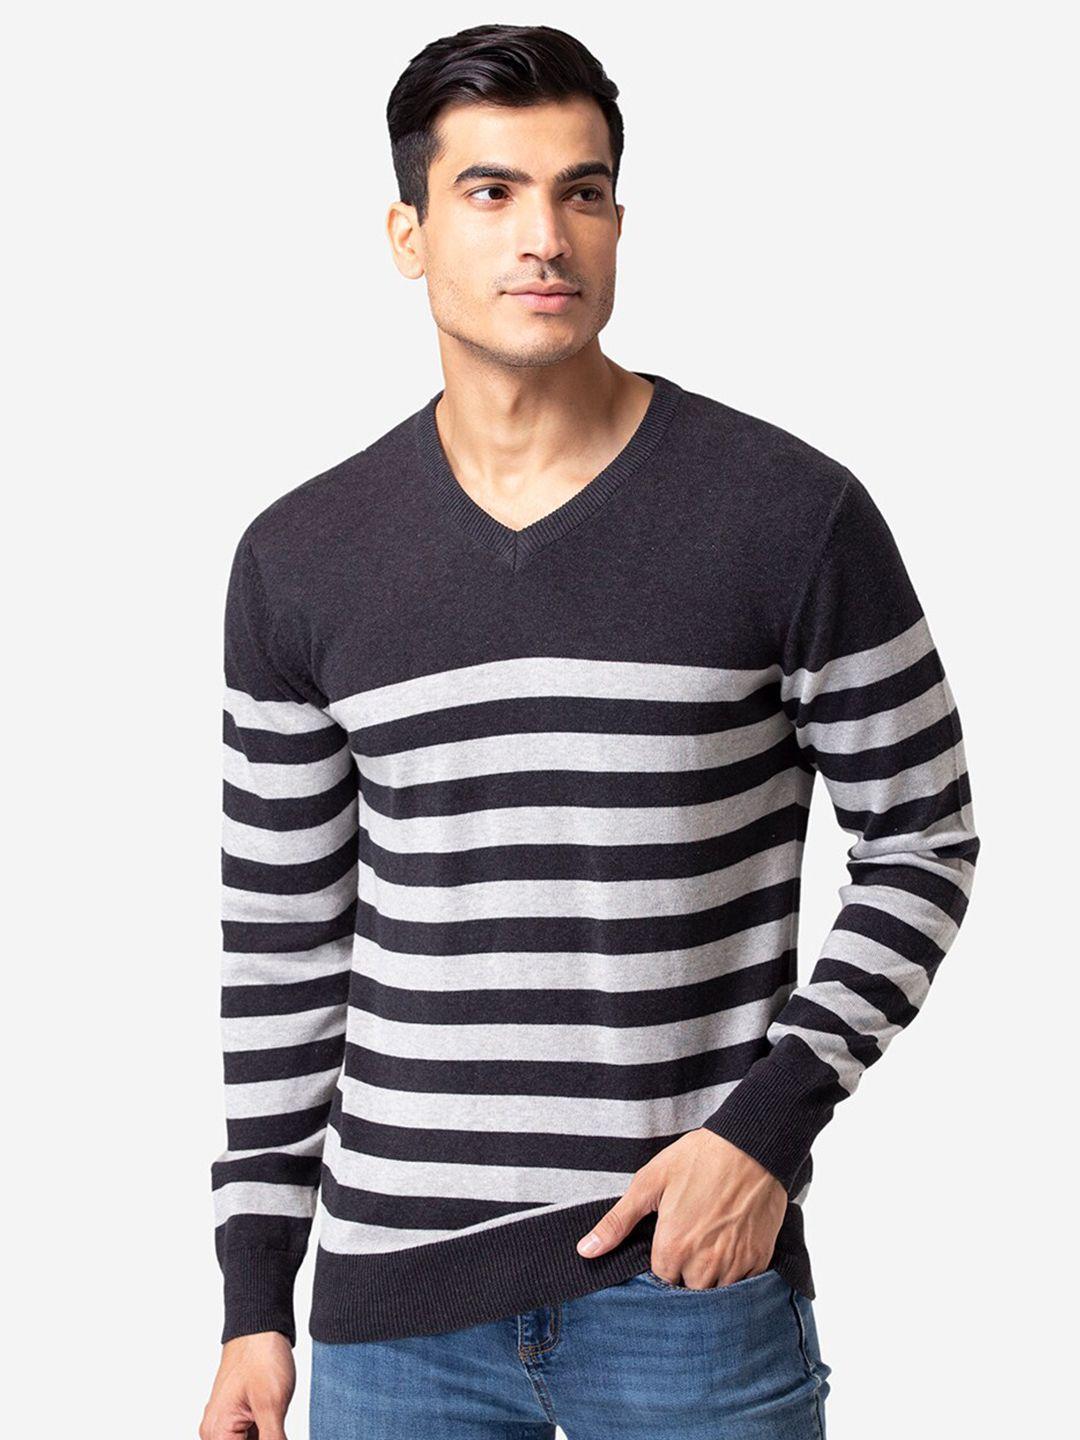 allen-cooper-men-black-&-white-striped-pullover